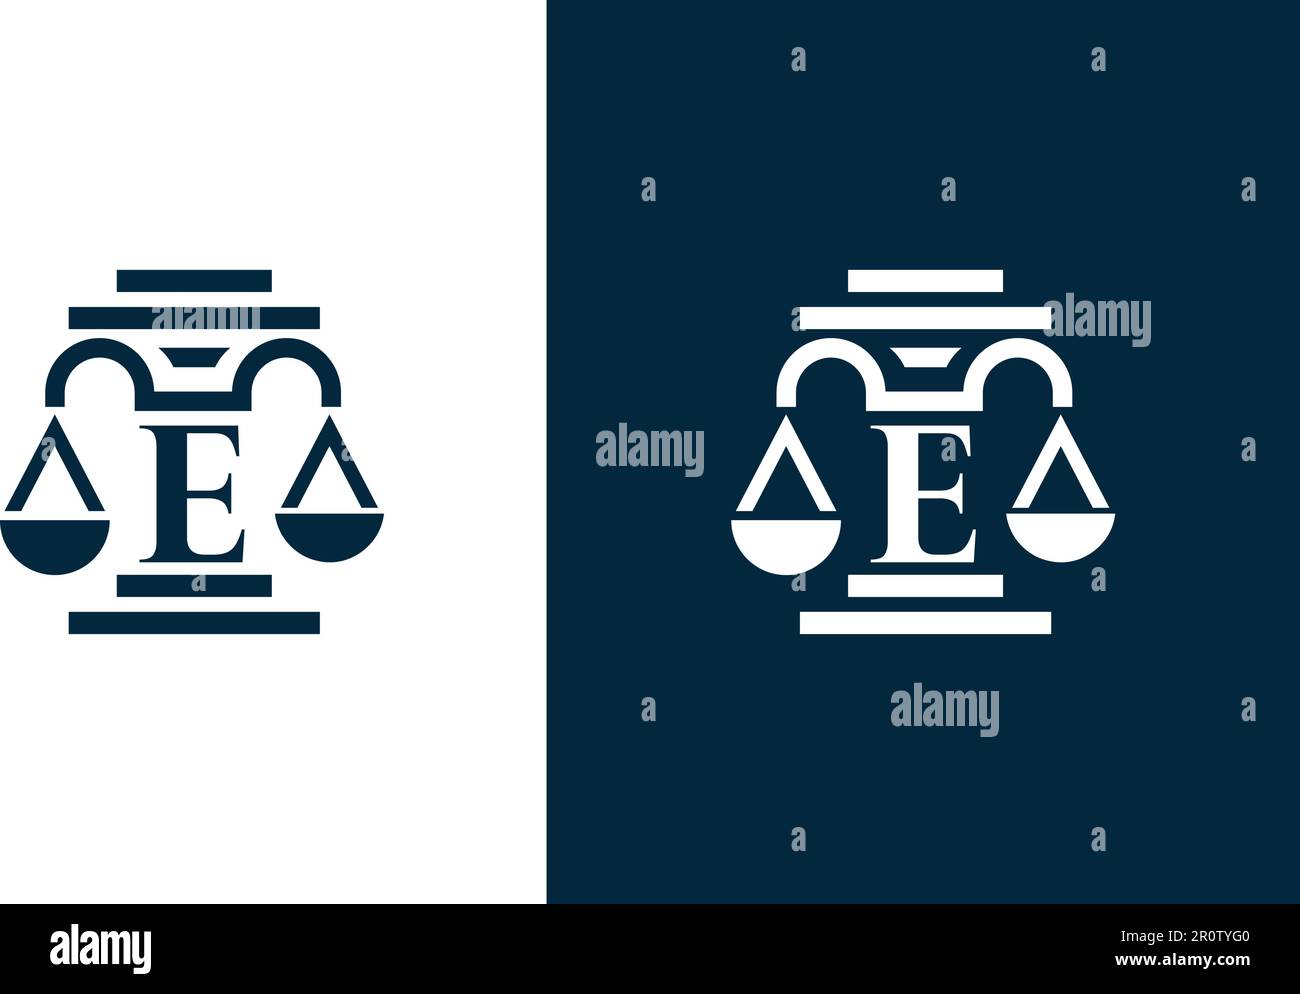 'E' letter law firm logo design Stock Vector